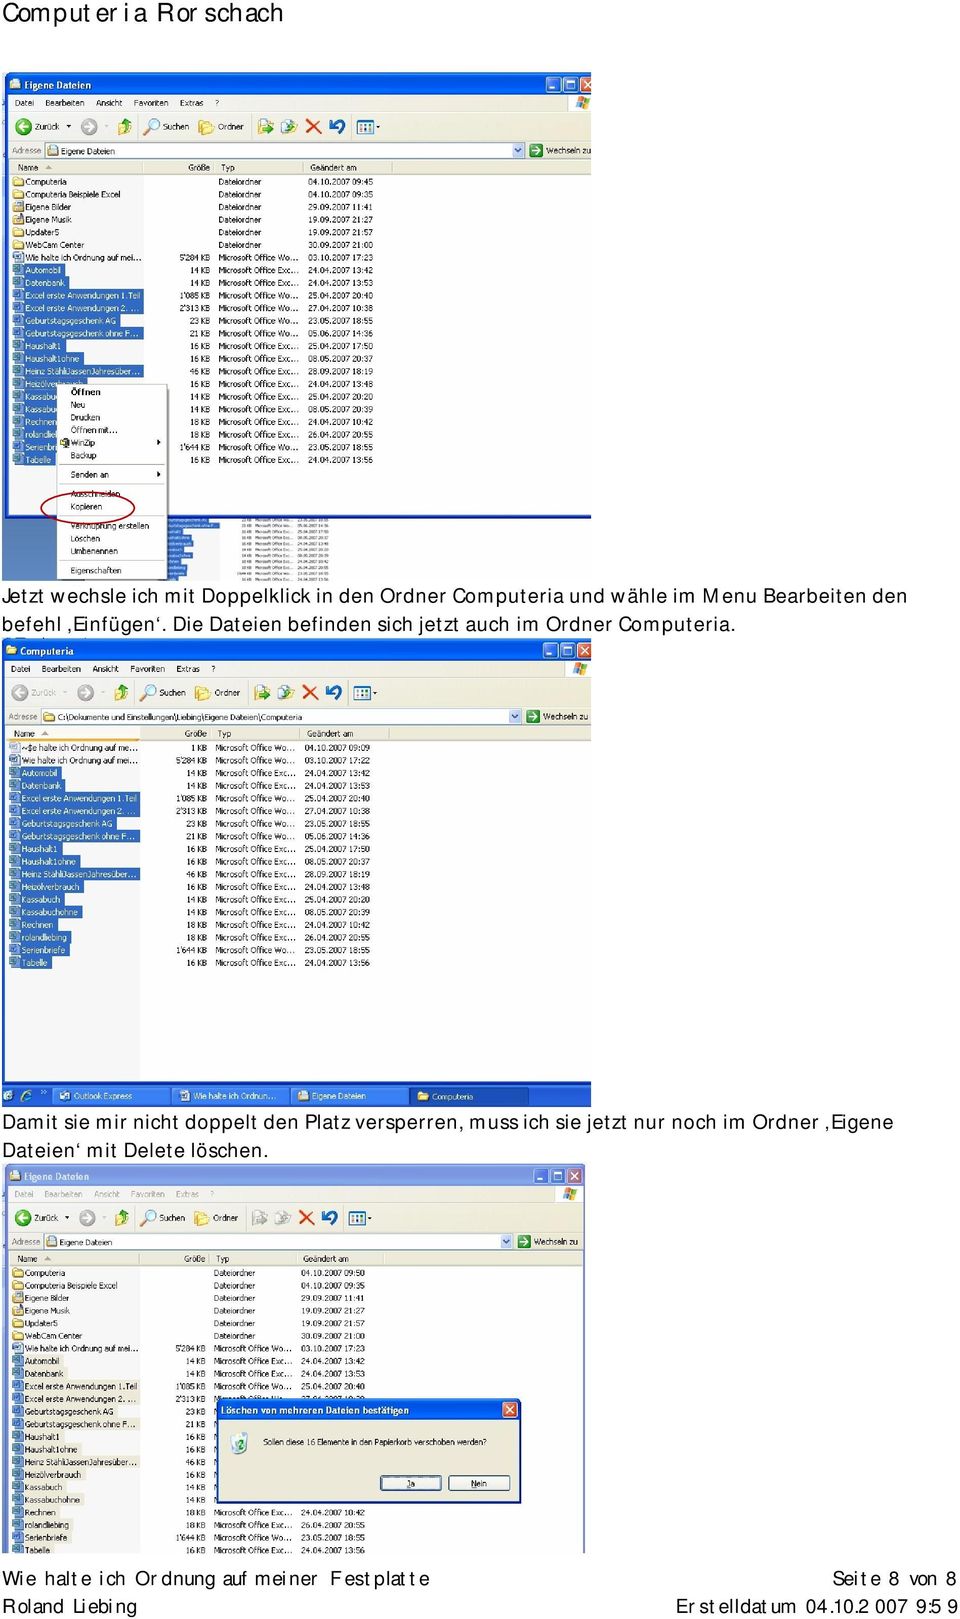 Die Dateien befinden sich jetzt auch im Ordner Computeria.